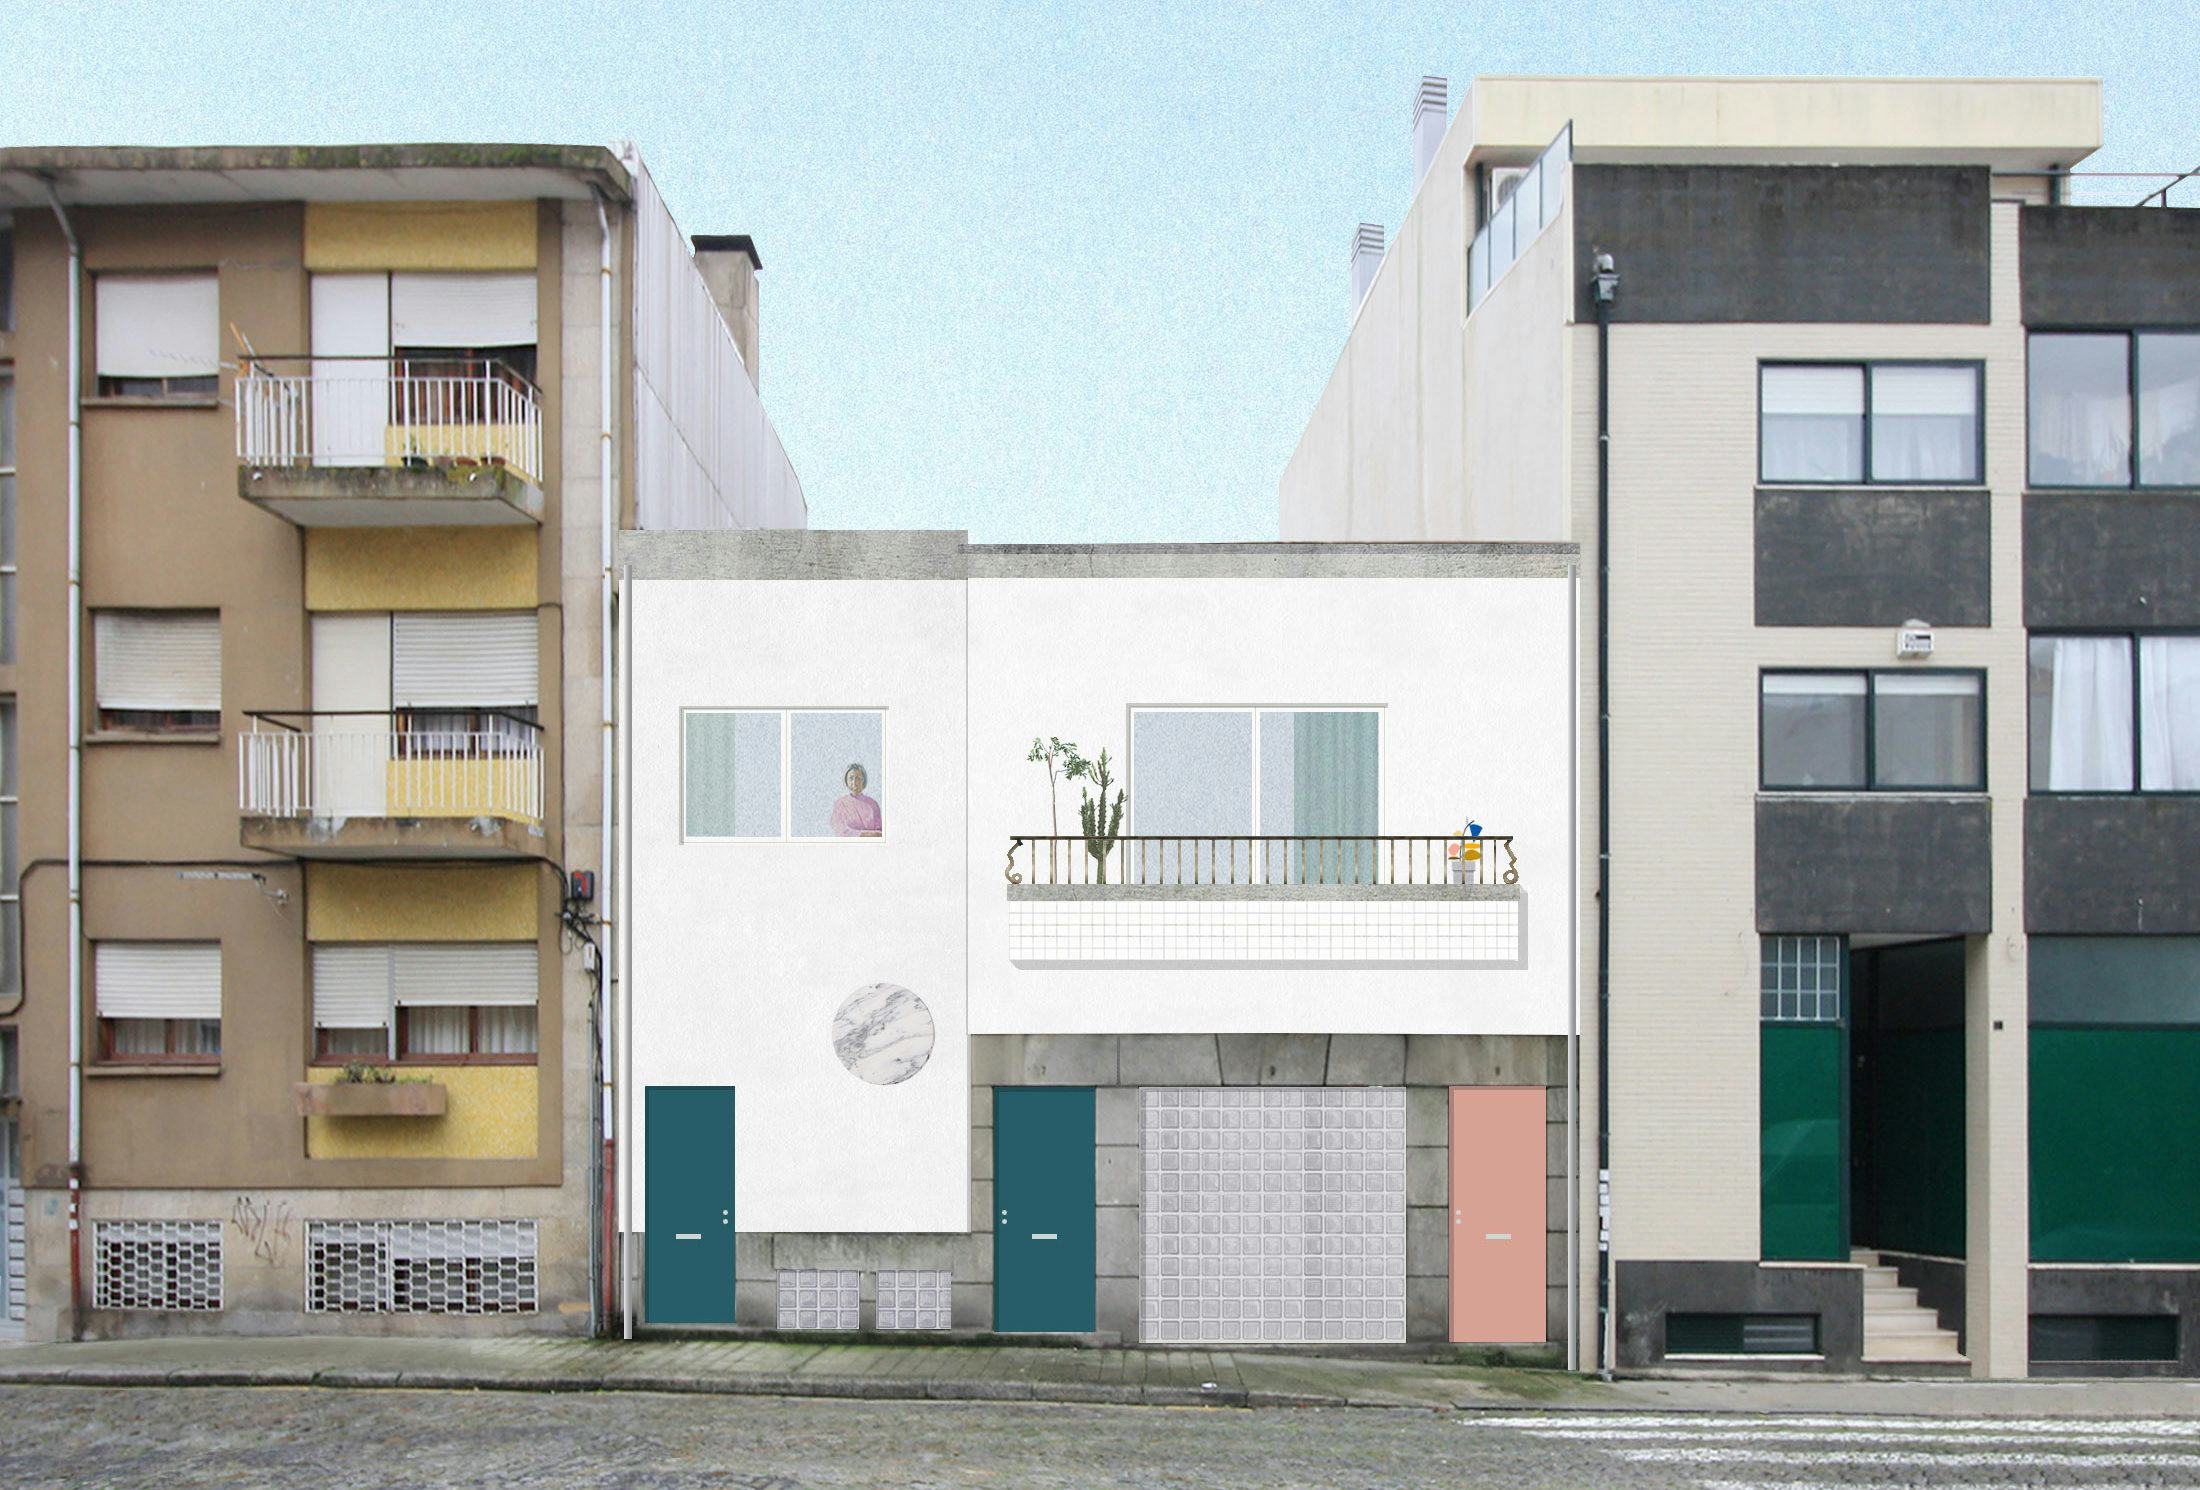 Gevel van een huis en atelier in Porto (PT), beeld fala